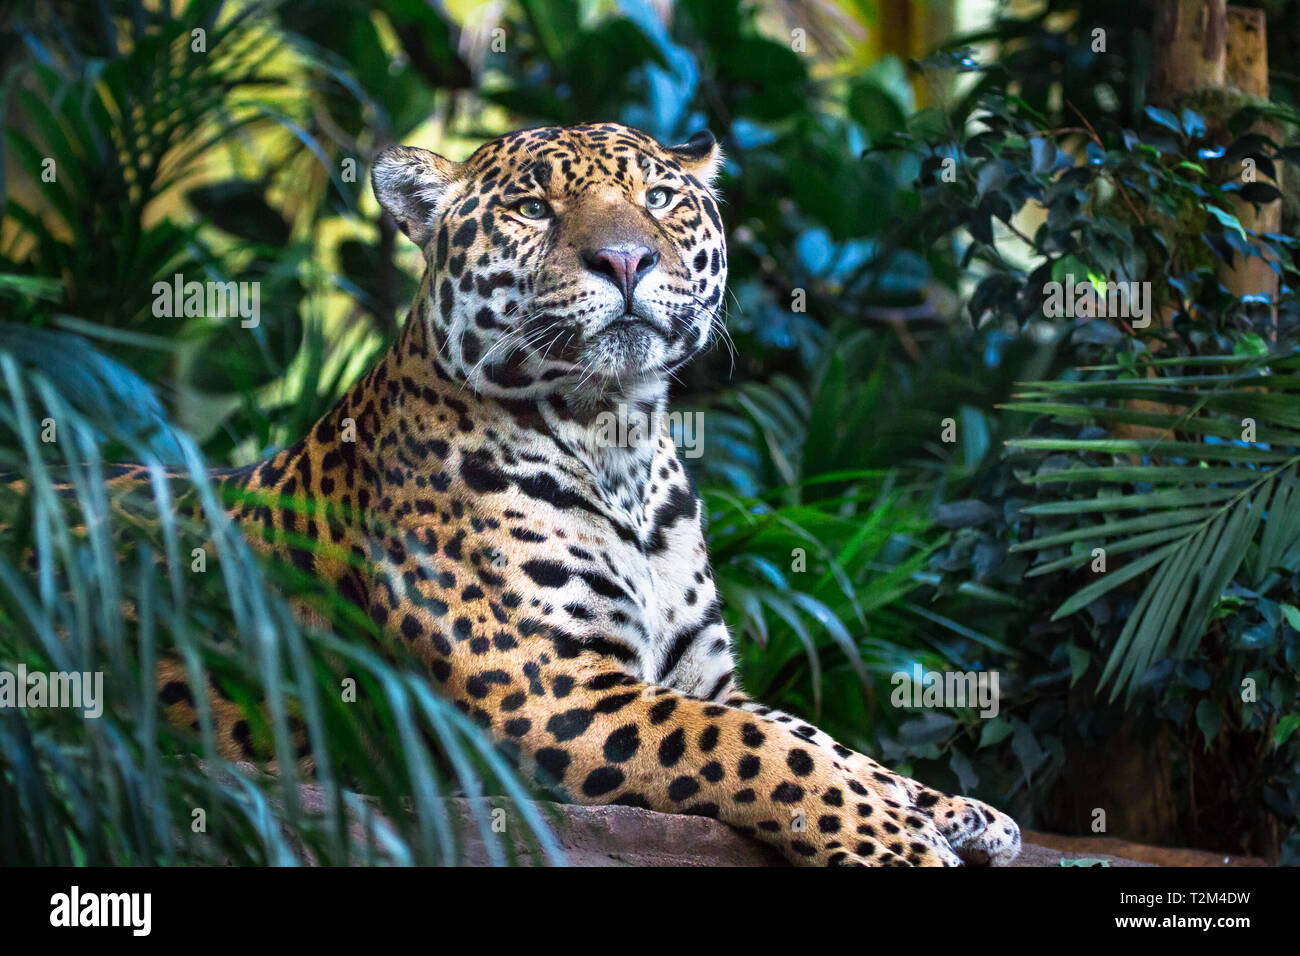 Ein erwachsener Jaguar (Panthera onca) Entspannung unter Dschungel Vegetation. Stockfoto